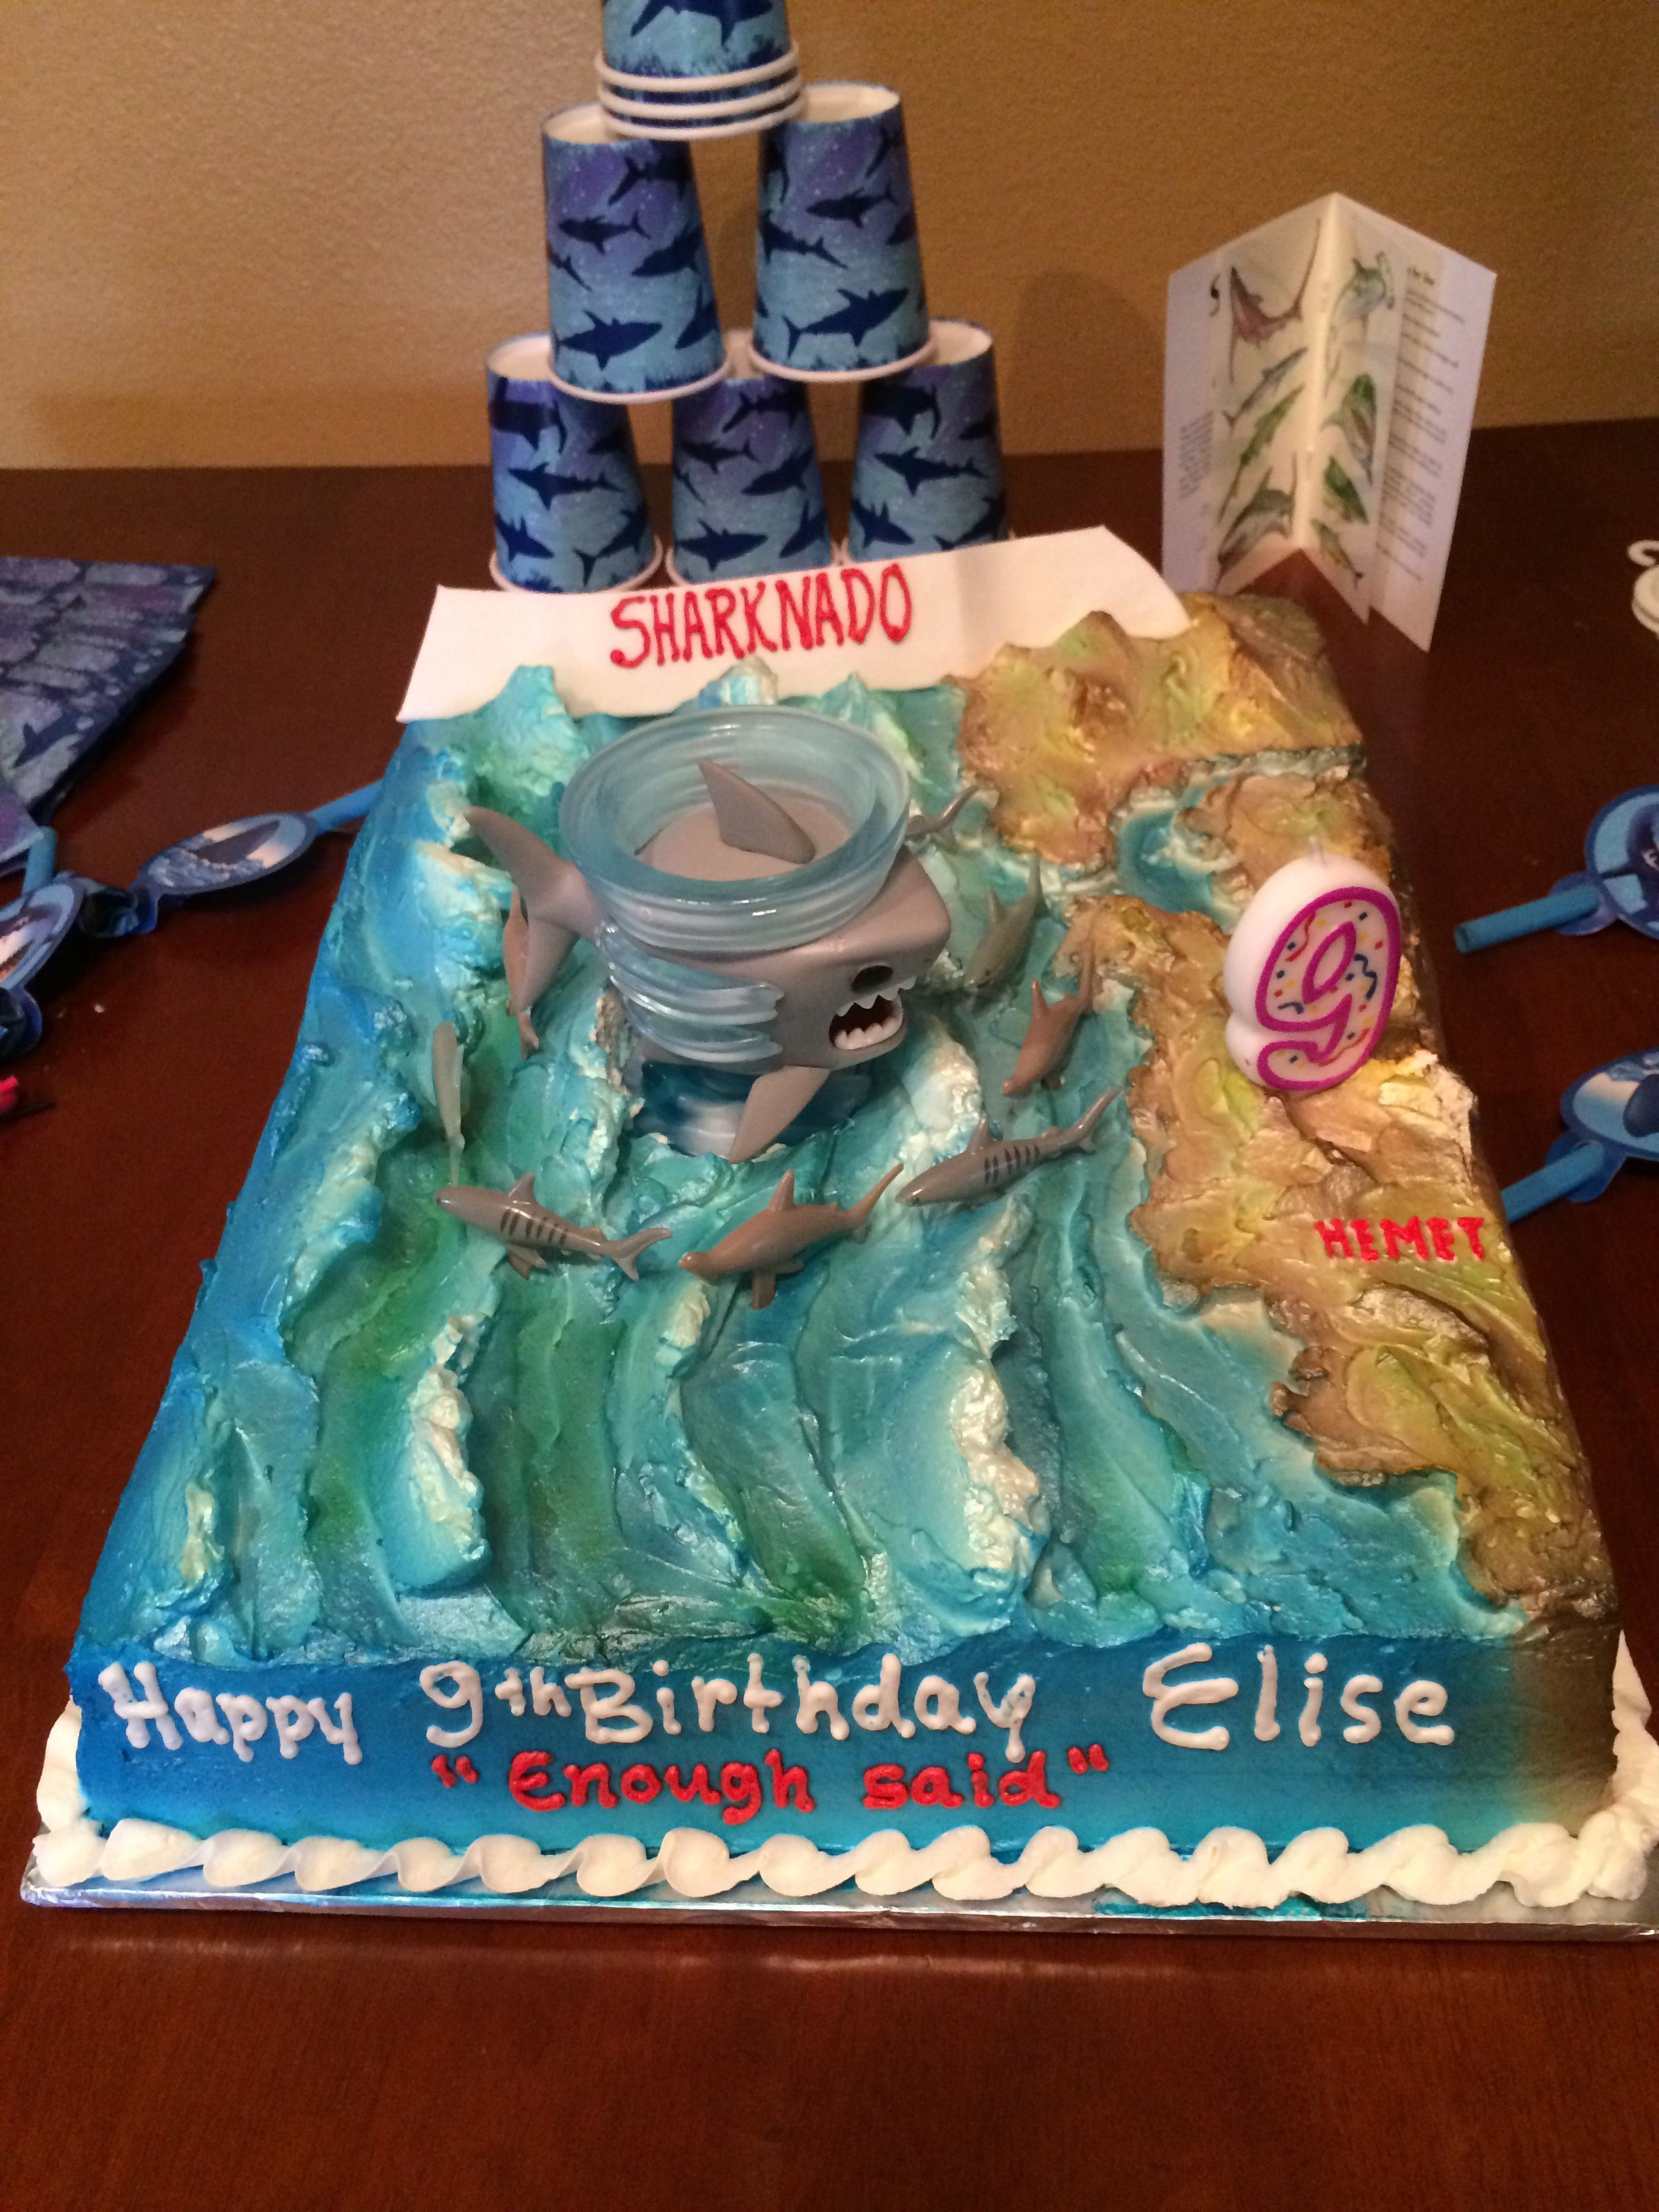 Sharknado Party Food Ideas
 Sharknado birthday cake 🎉🎈 Edibles